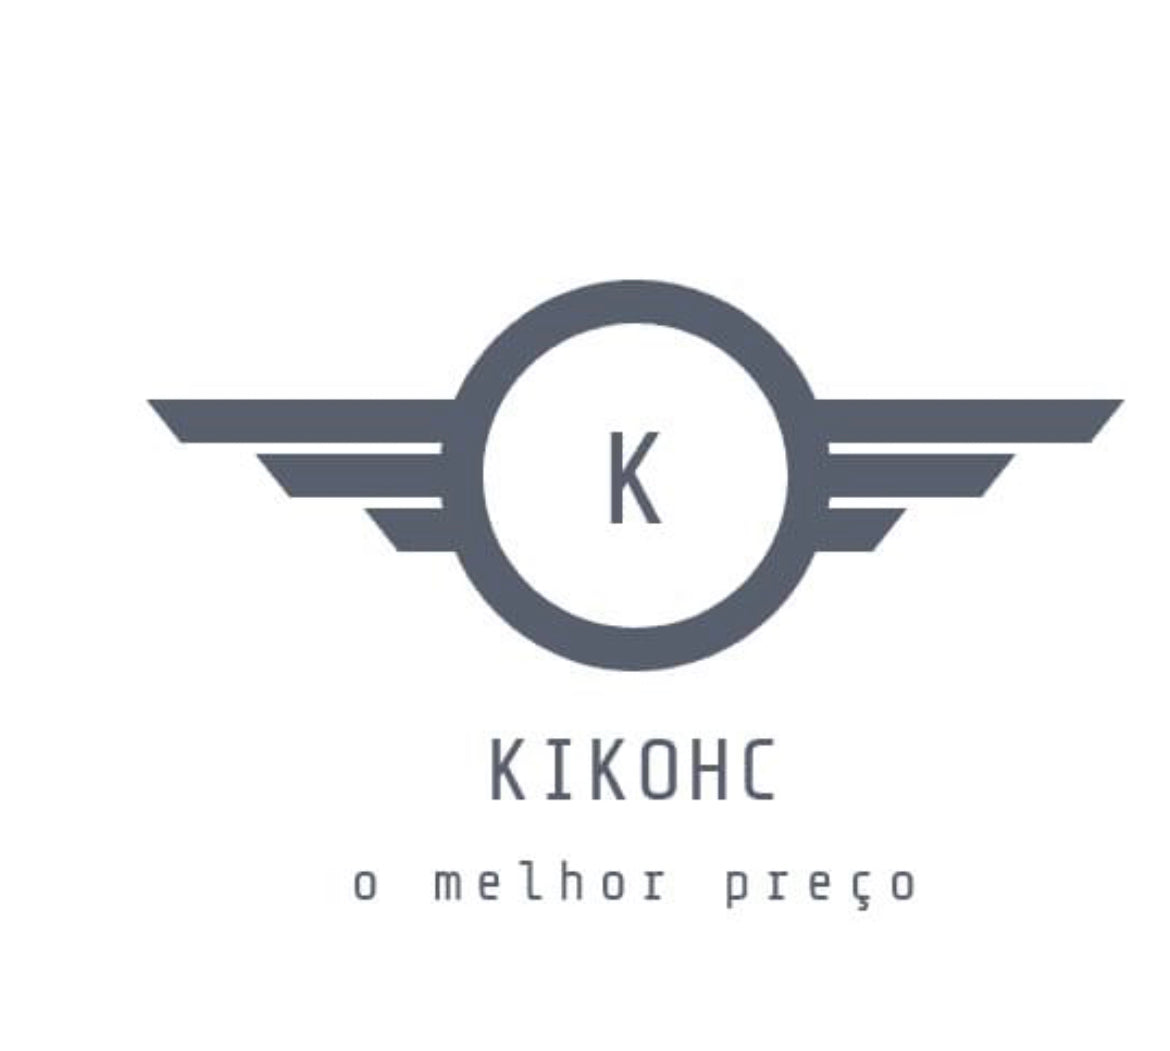 Kikohc